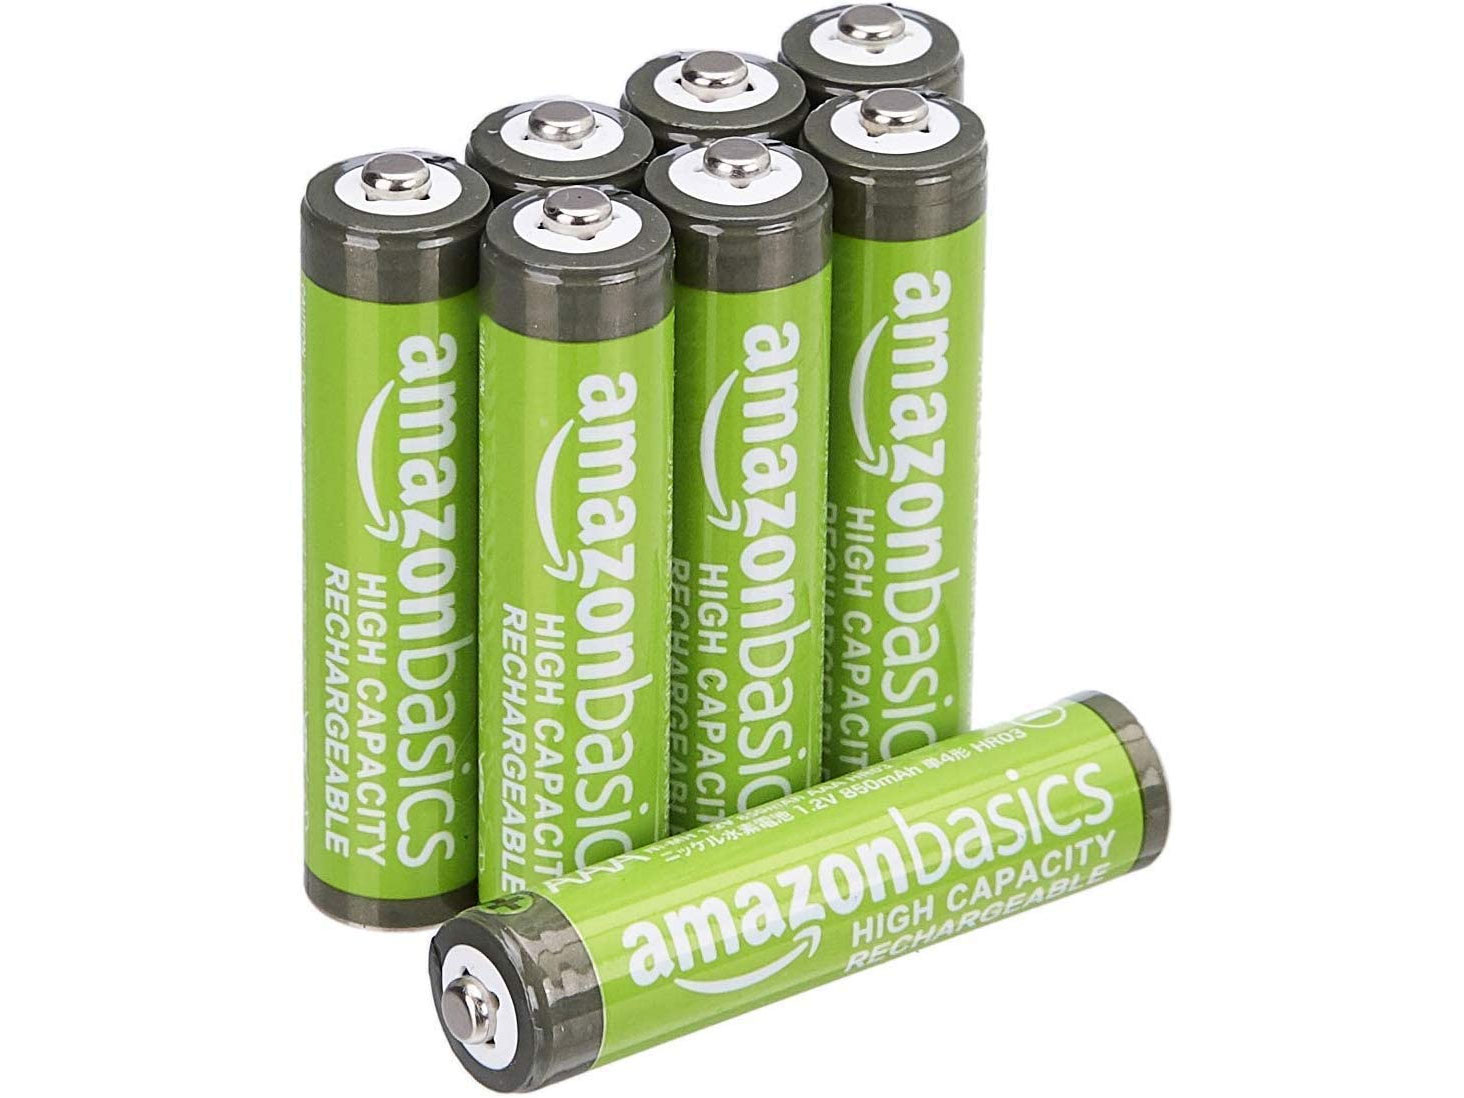 Amazon Basics AAA Rechargeable Batteries (8 Pack)只賣$9.24